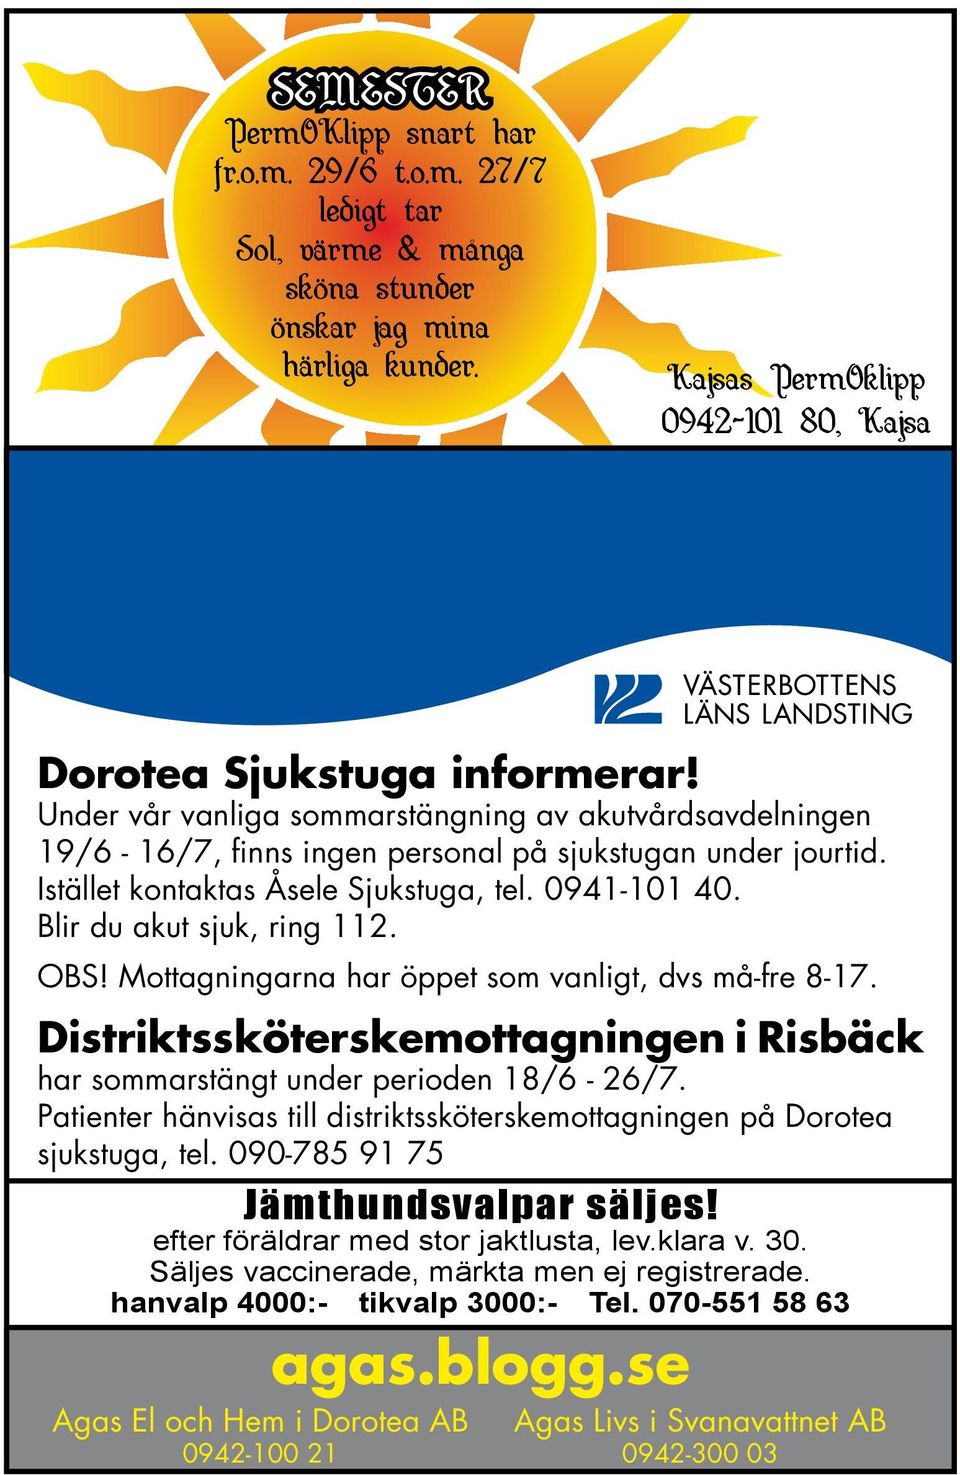 Blir du akut sjuk, ring 112. OBS! Mottagningarna har öppet som vanligt, dvs må-fre 8-17. Distriktssköterskemottagningen i Risbäck har sommarstängt under perioden 18/6-26/7.